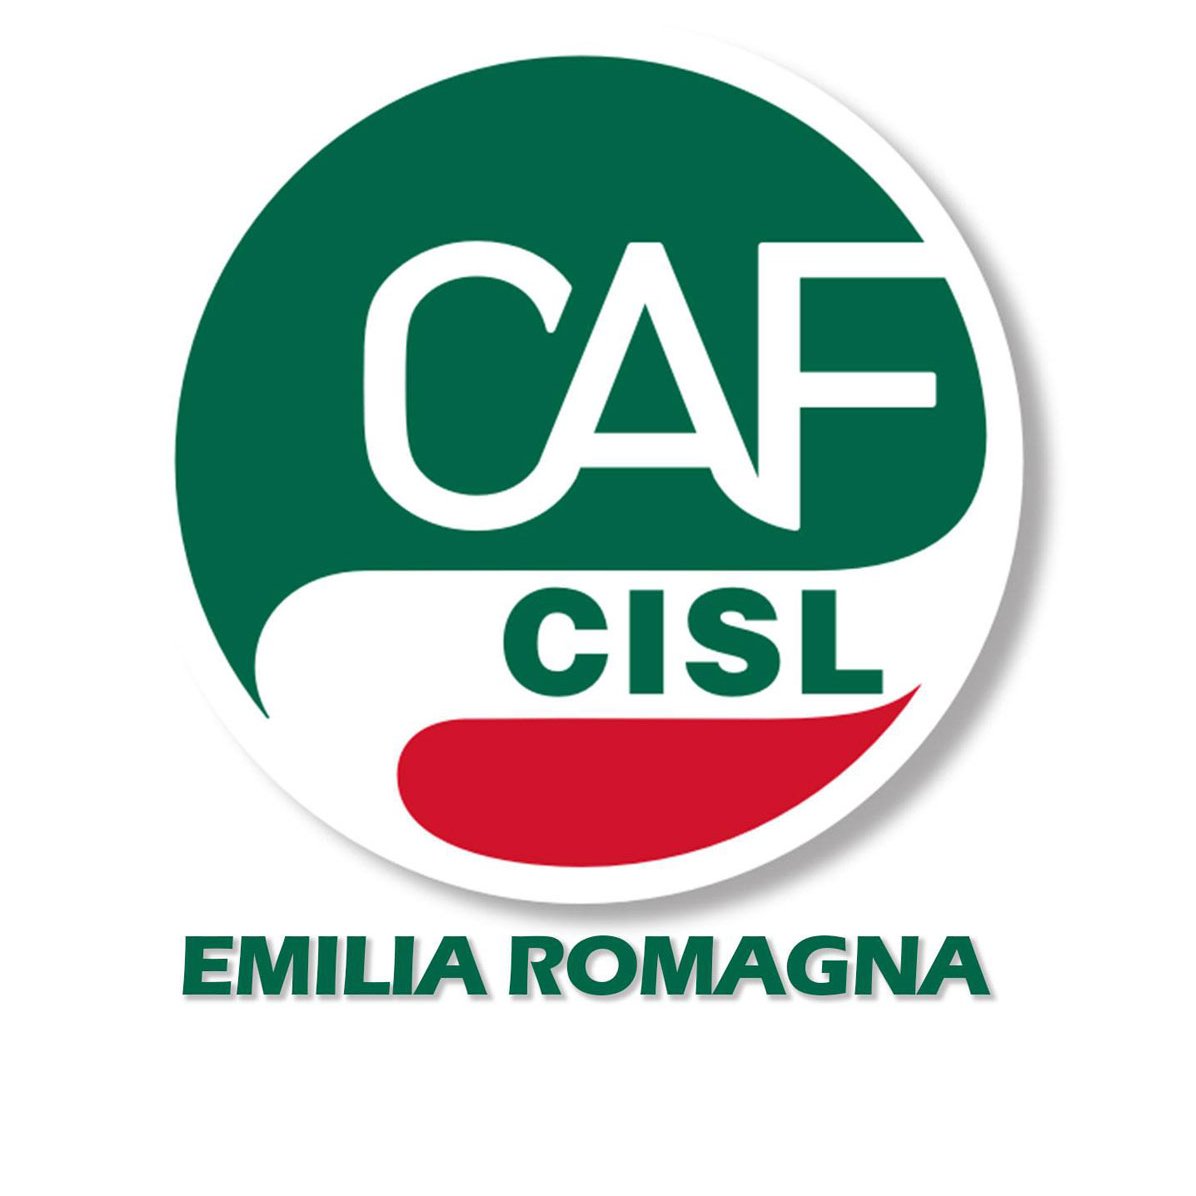 Il Caf Cisl fornisce assistenza e consulenza nel campo fiscale a cittadini, lavoratori e pensionati: un supporto personalizzato e qualificato.